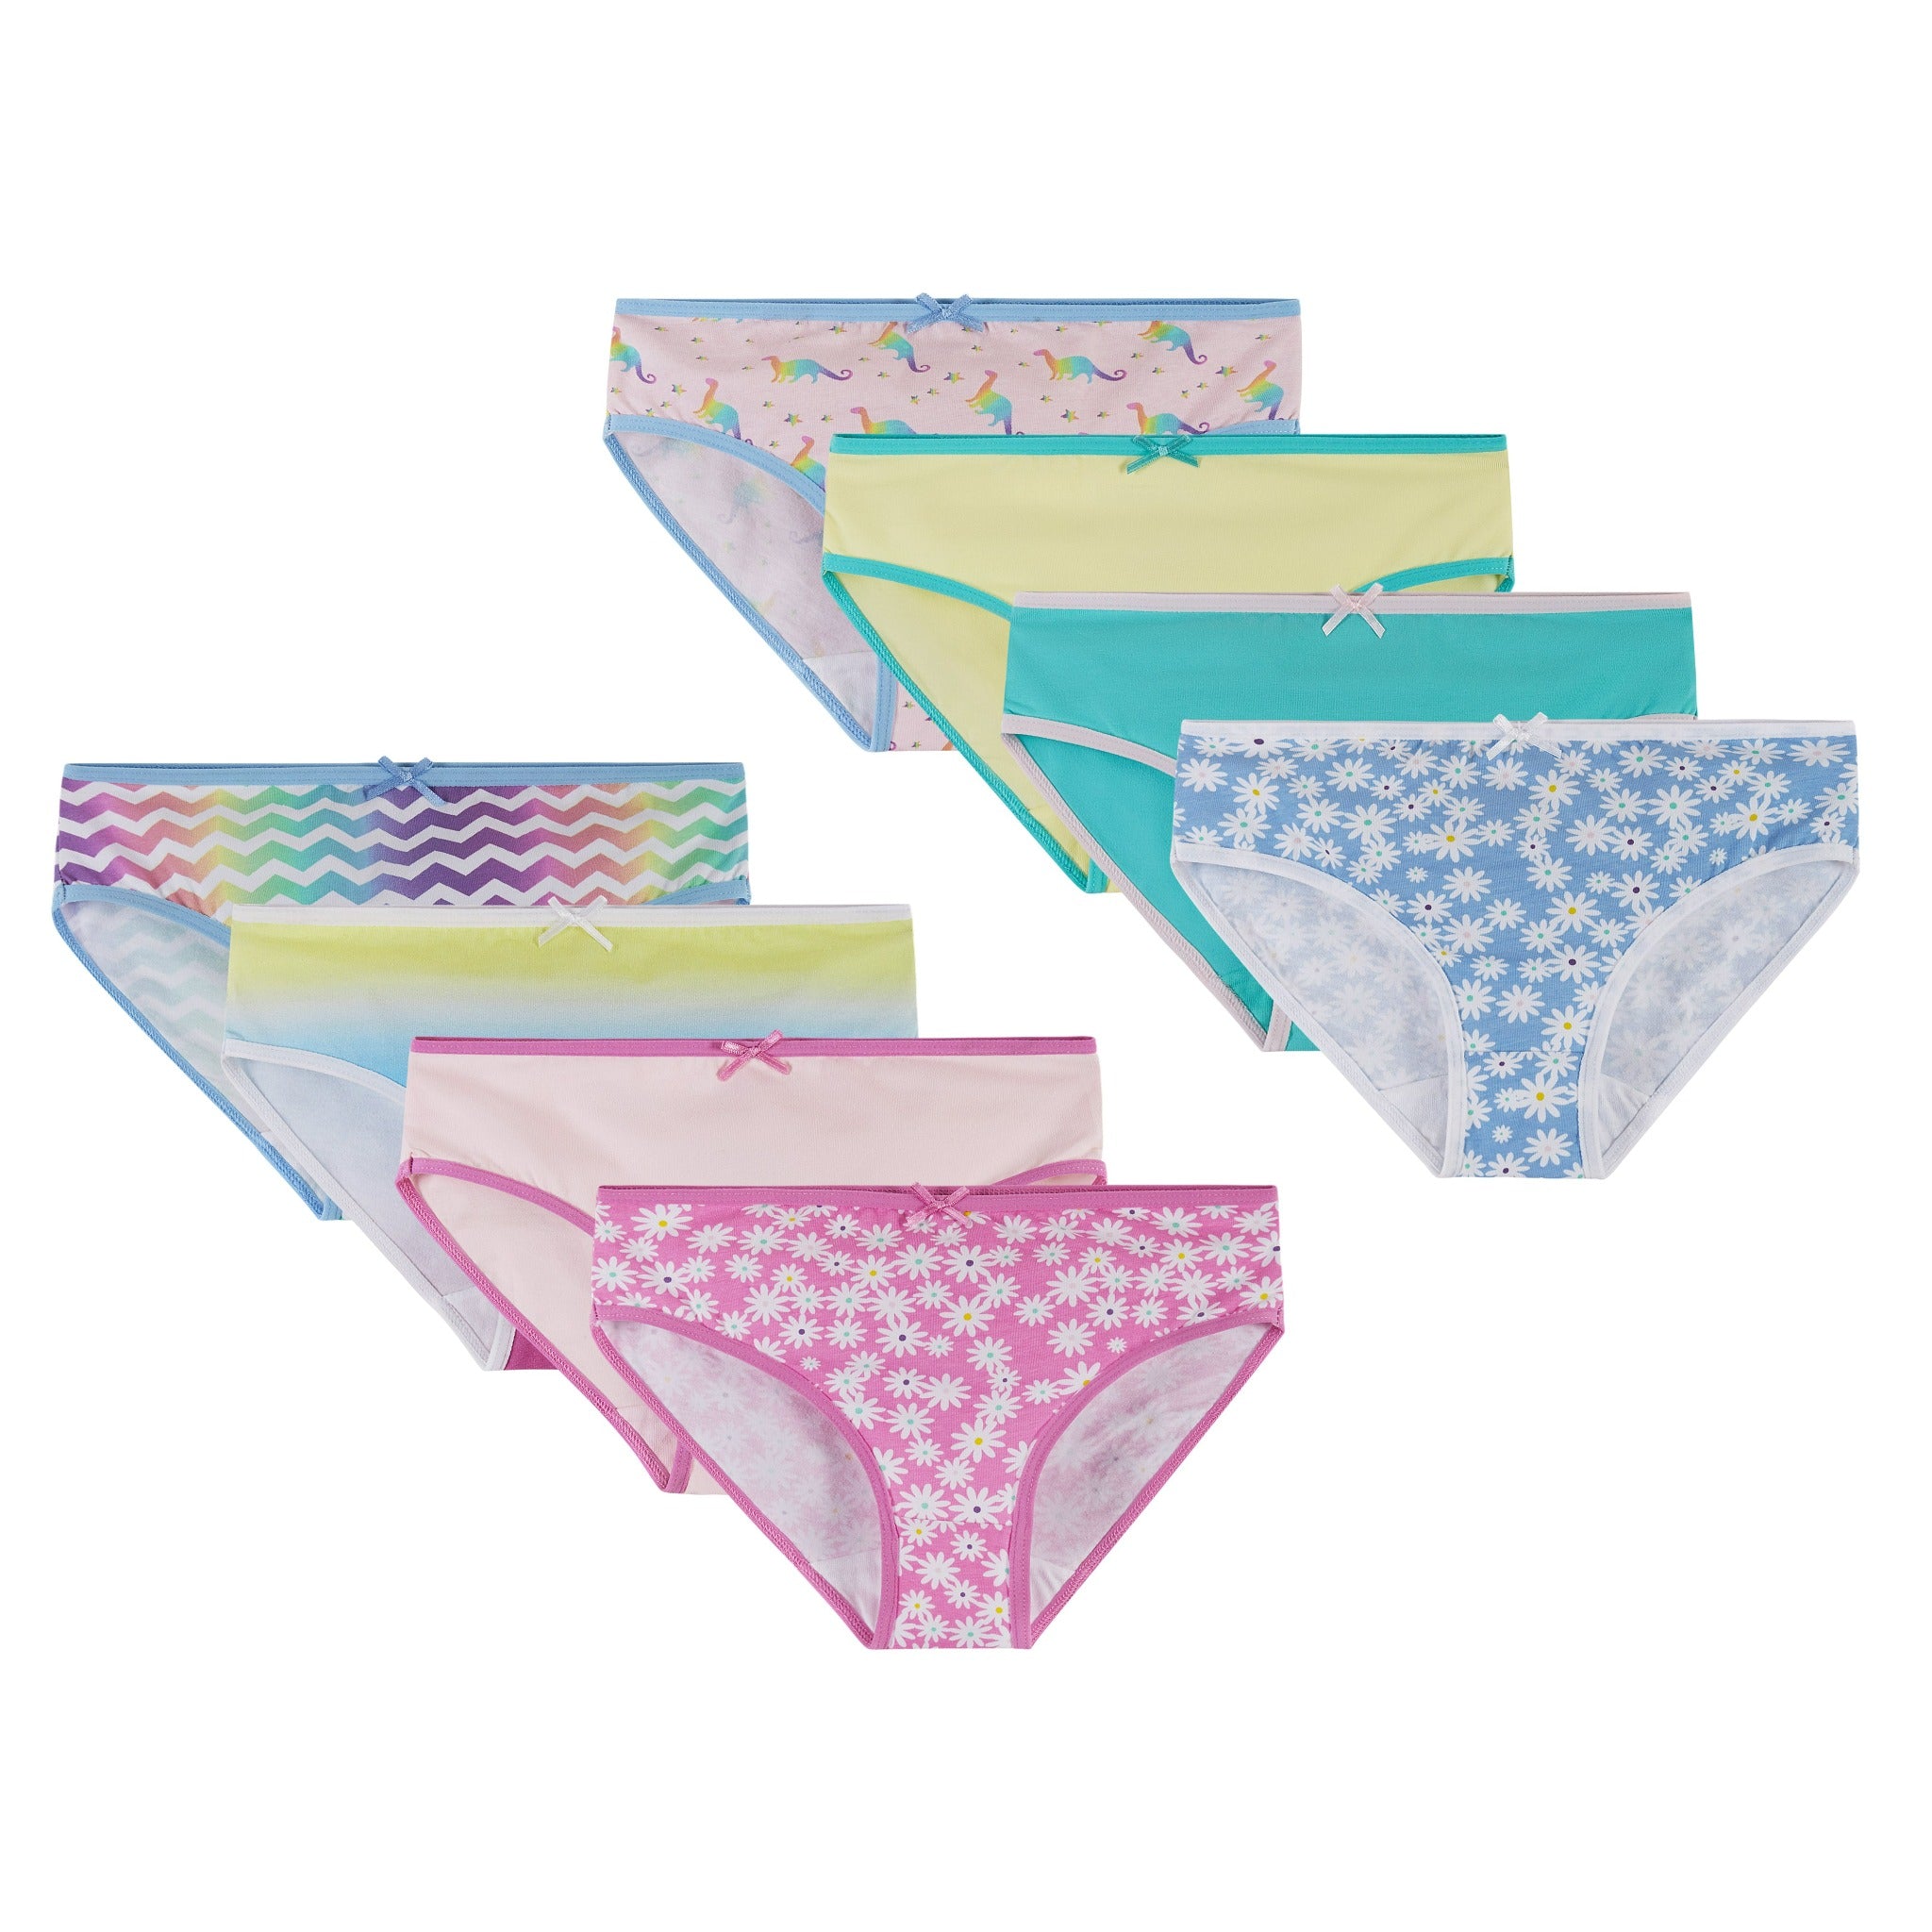 Buy Ladies 8-16 Tradie 6 Pack Cotton Underwear Bikini Briefs Focus